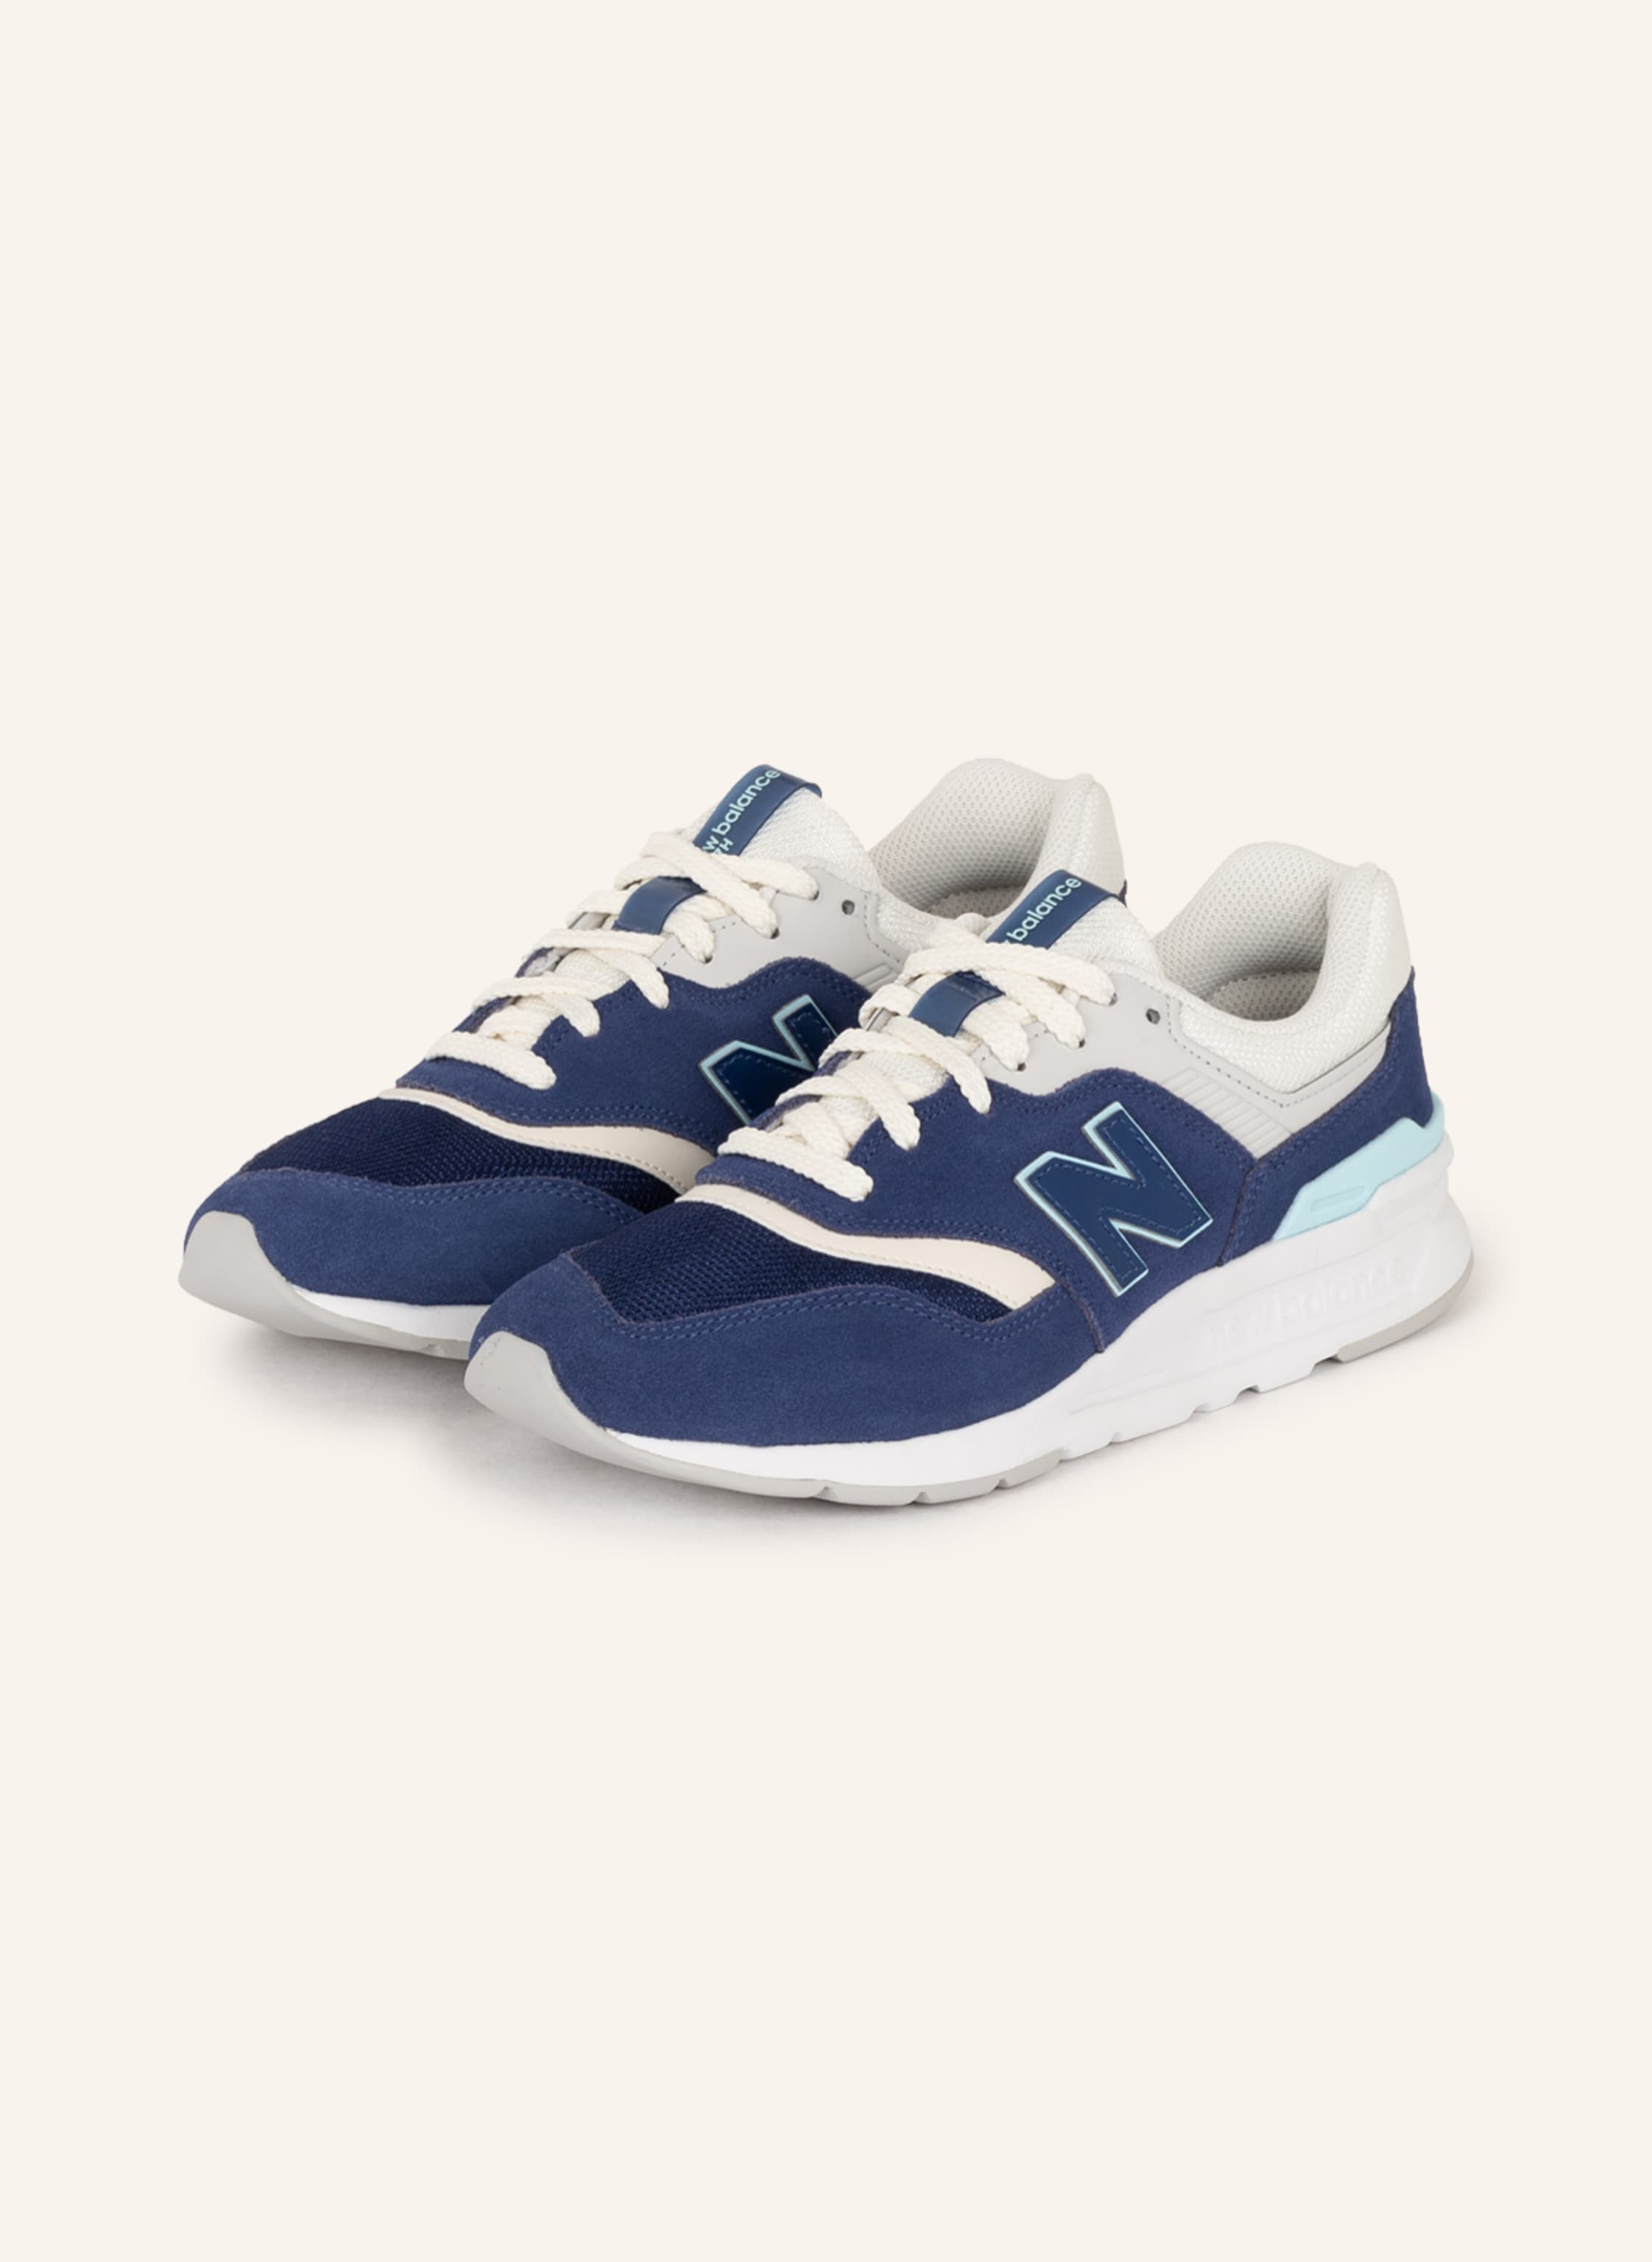 Revelar Acostumbrados a lb new balance Sneakers 997H in blue/ light blue/ white | Breuninger